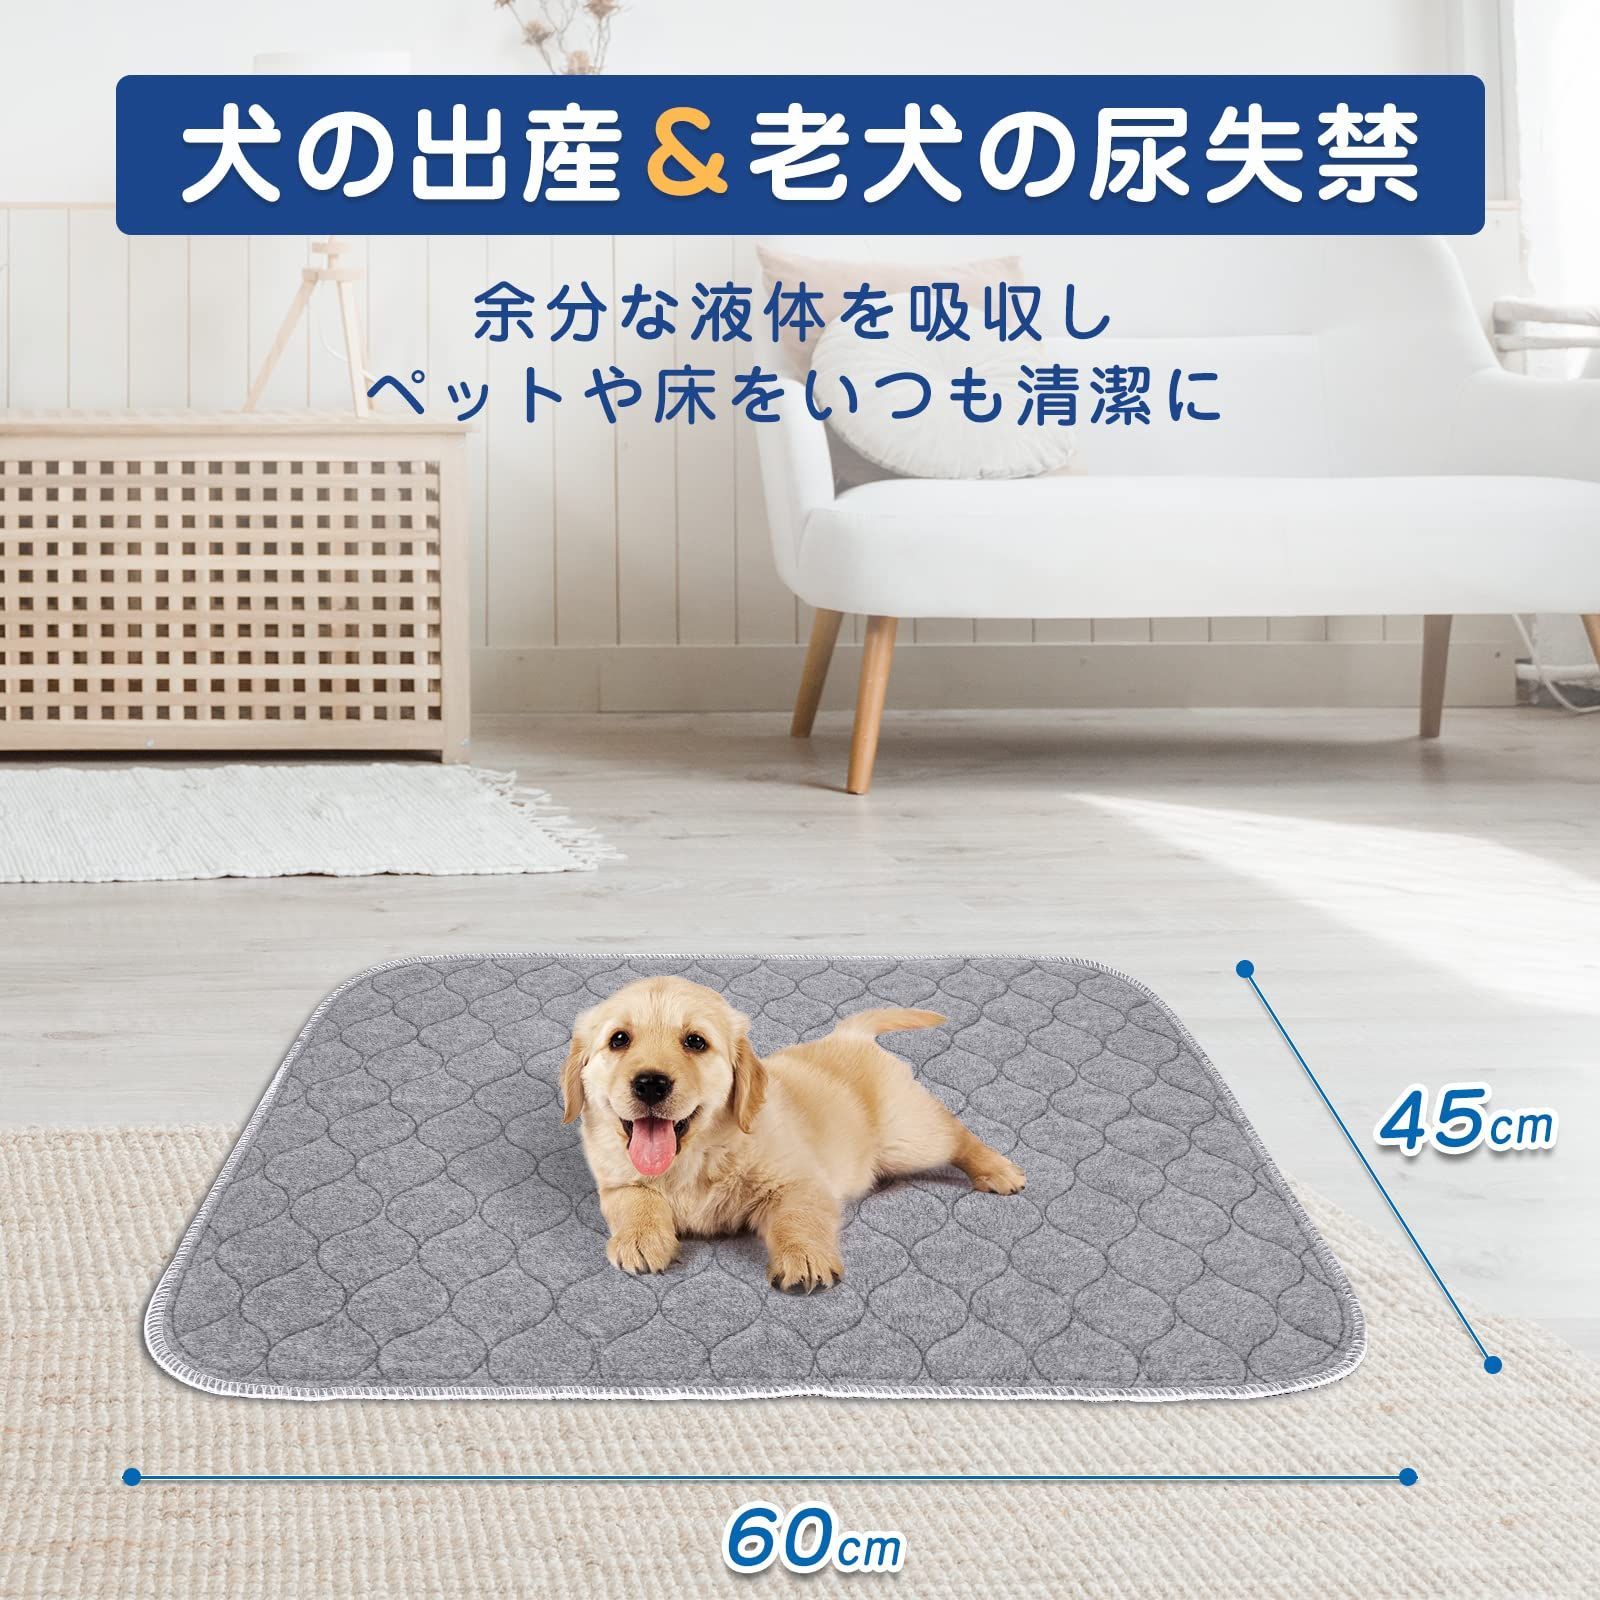 【色: グレー】犬 猫用洗えるペットシーツ おしっこパッド ペット用 下敷き マ